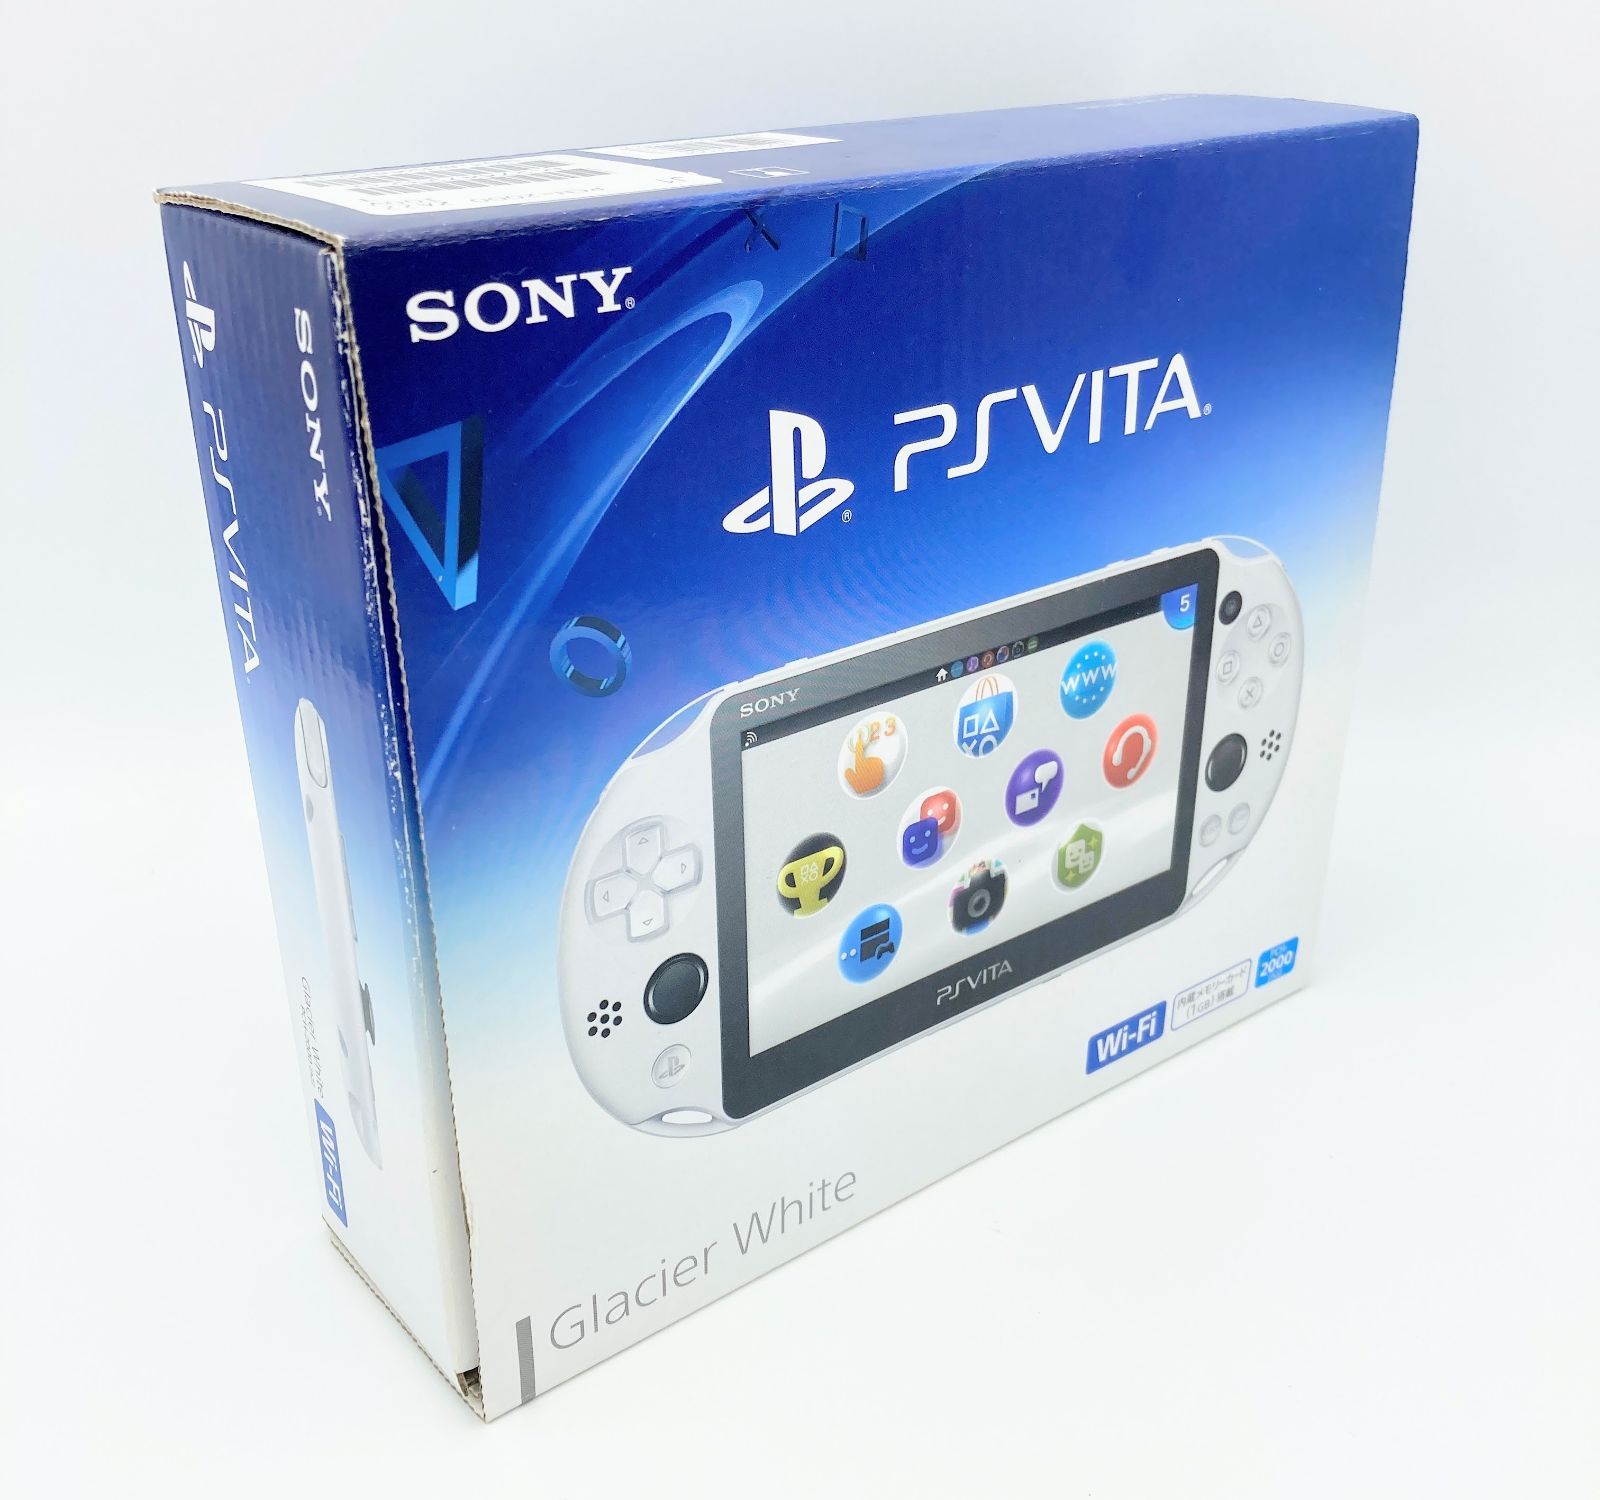 カテゴリ PlayStation Vita - PSvita グレイシャーホワイト(PCH-2000ZA22) の通販 by マコ's